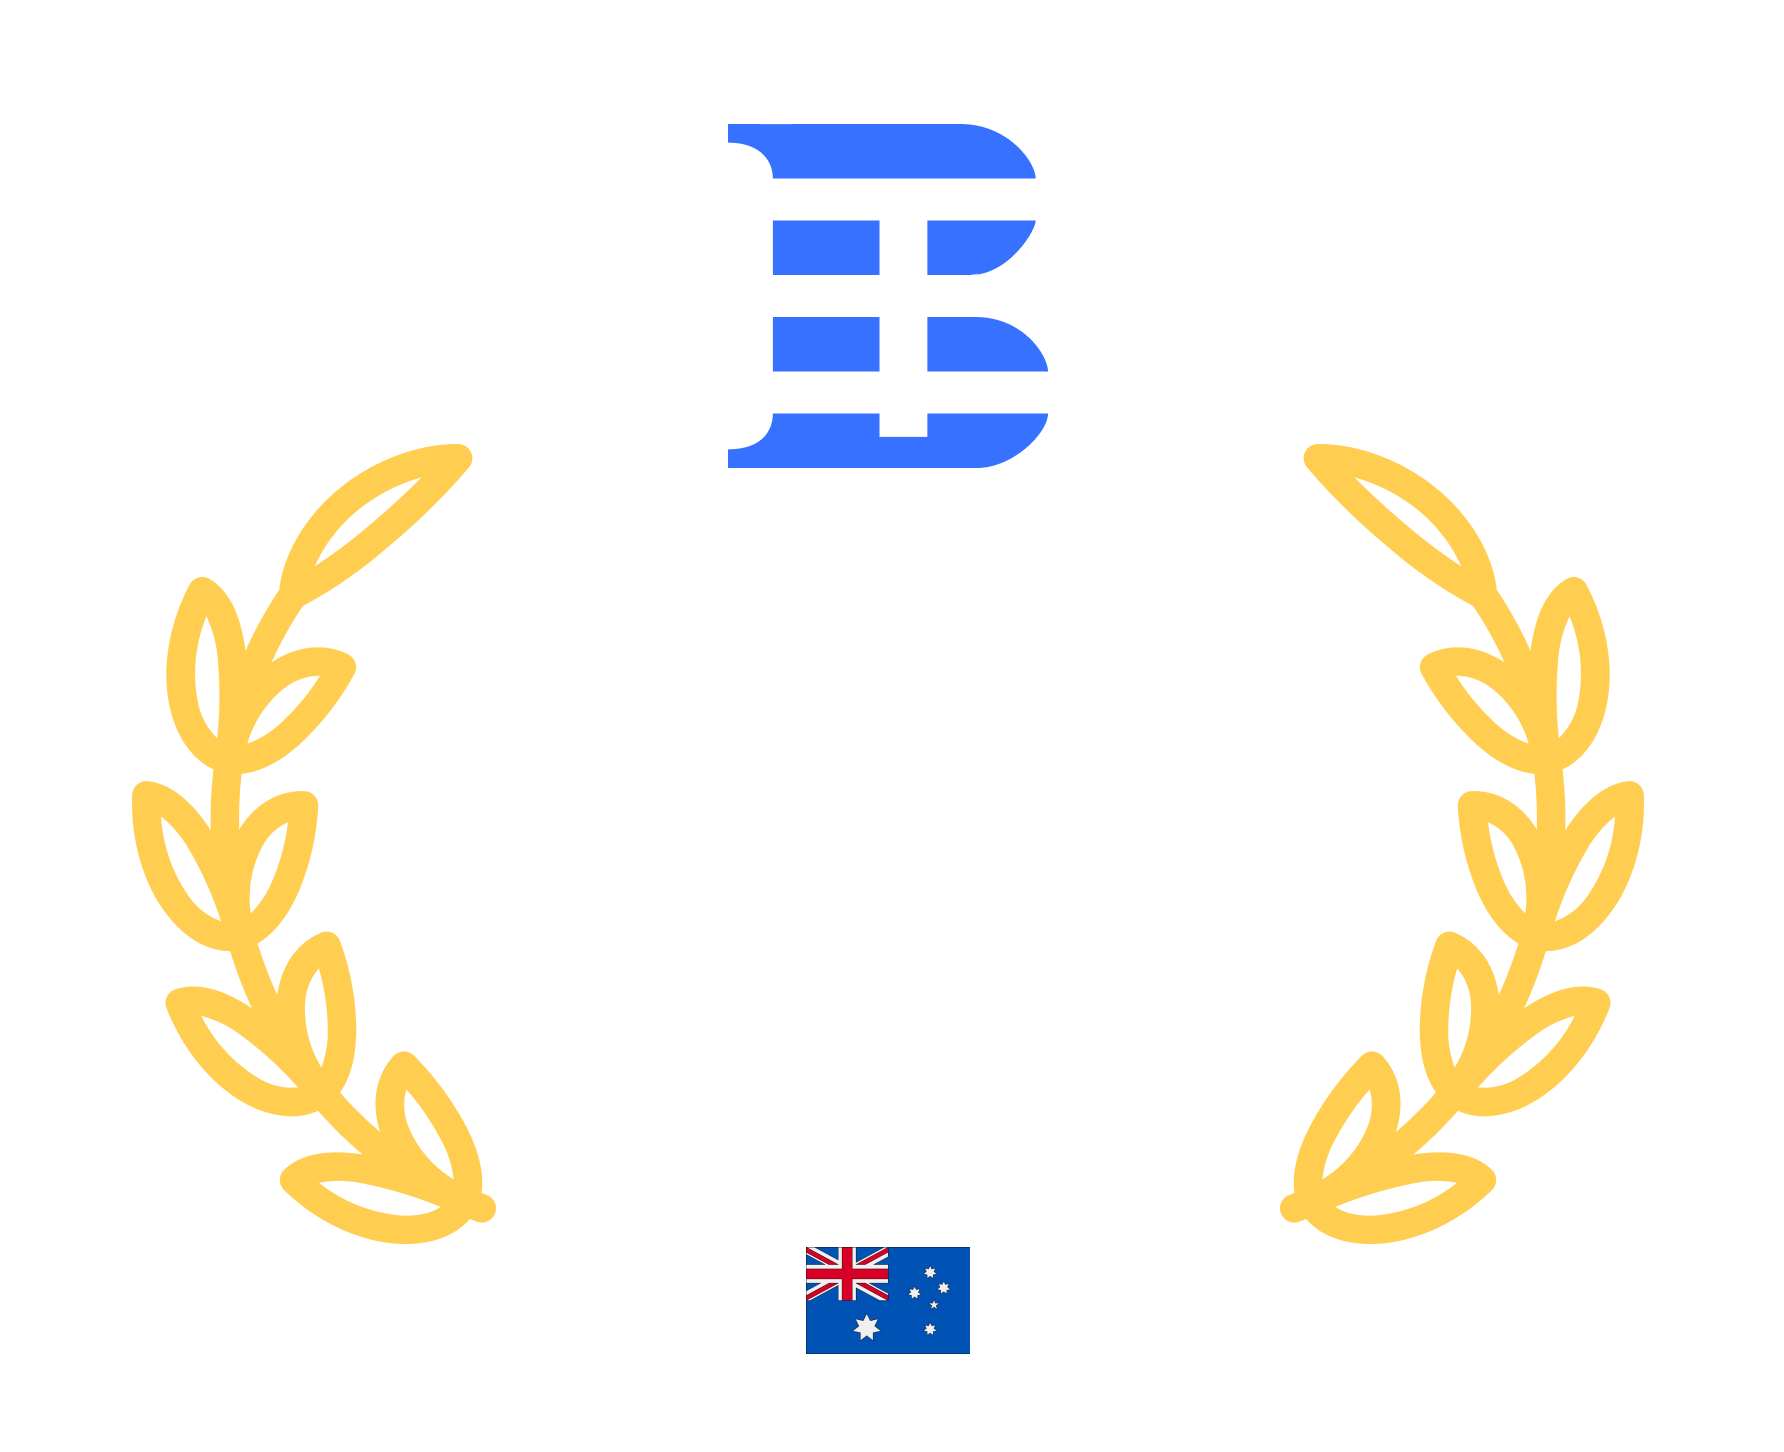 2023 award winner for ReactJS